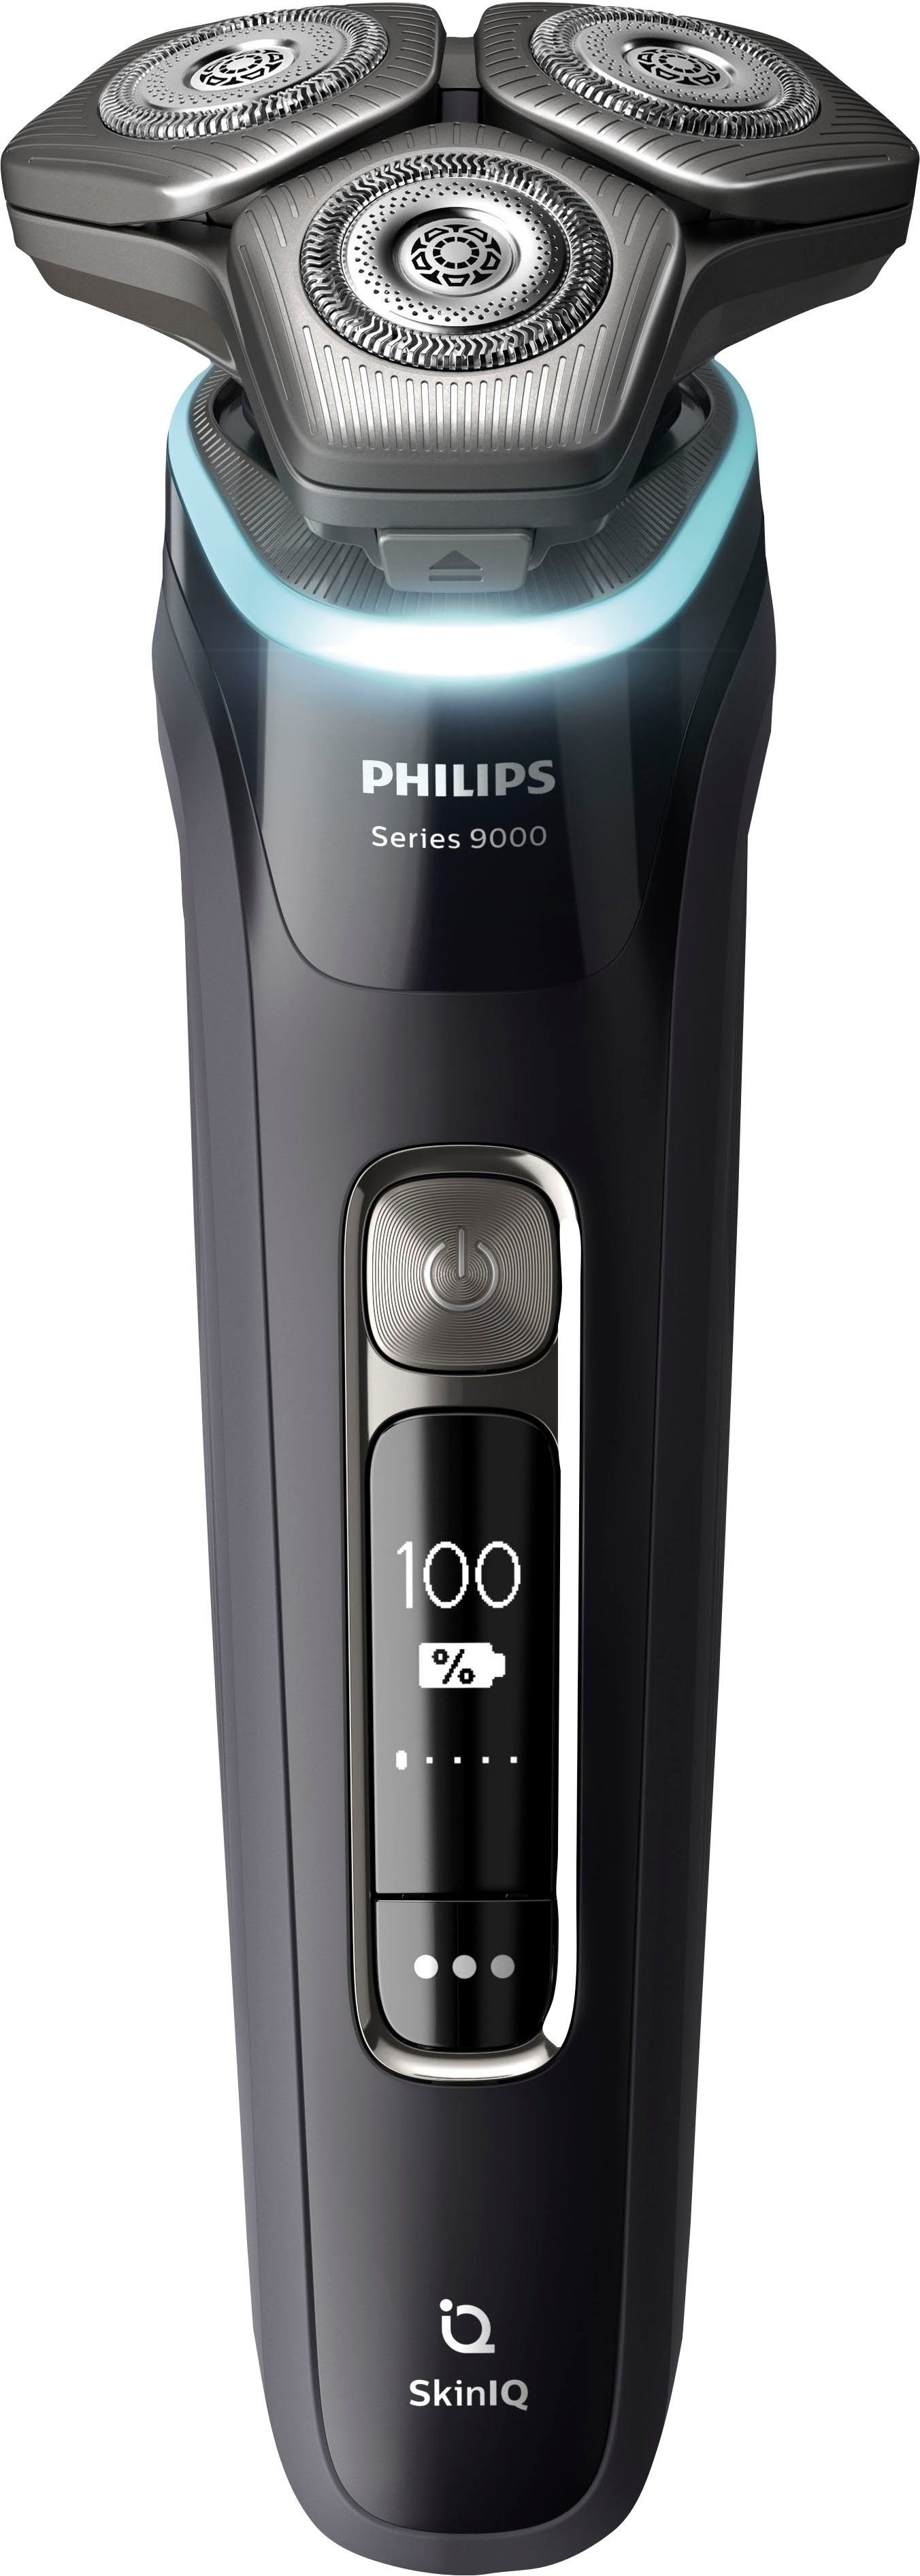 Philips Elektrorasierer Shaver Etui, integrierter Ladestand, mit Reinigungskartuschen, Technologie 9000 Series Präzisionstrimmer, 2 S9976/55, SkinIQ